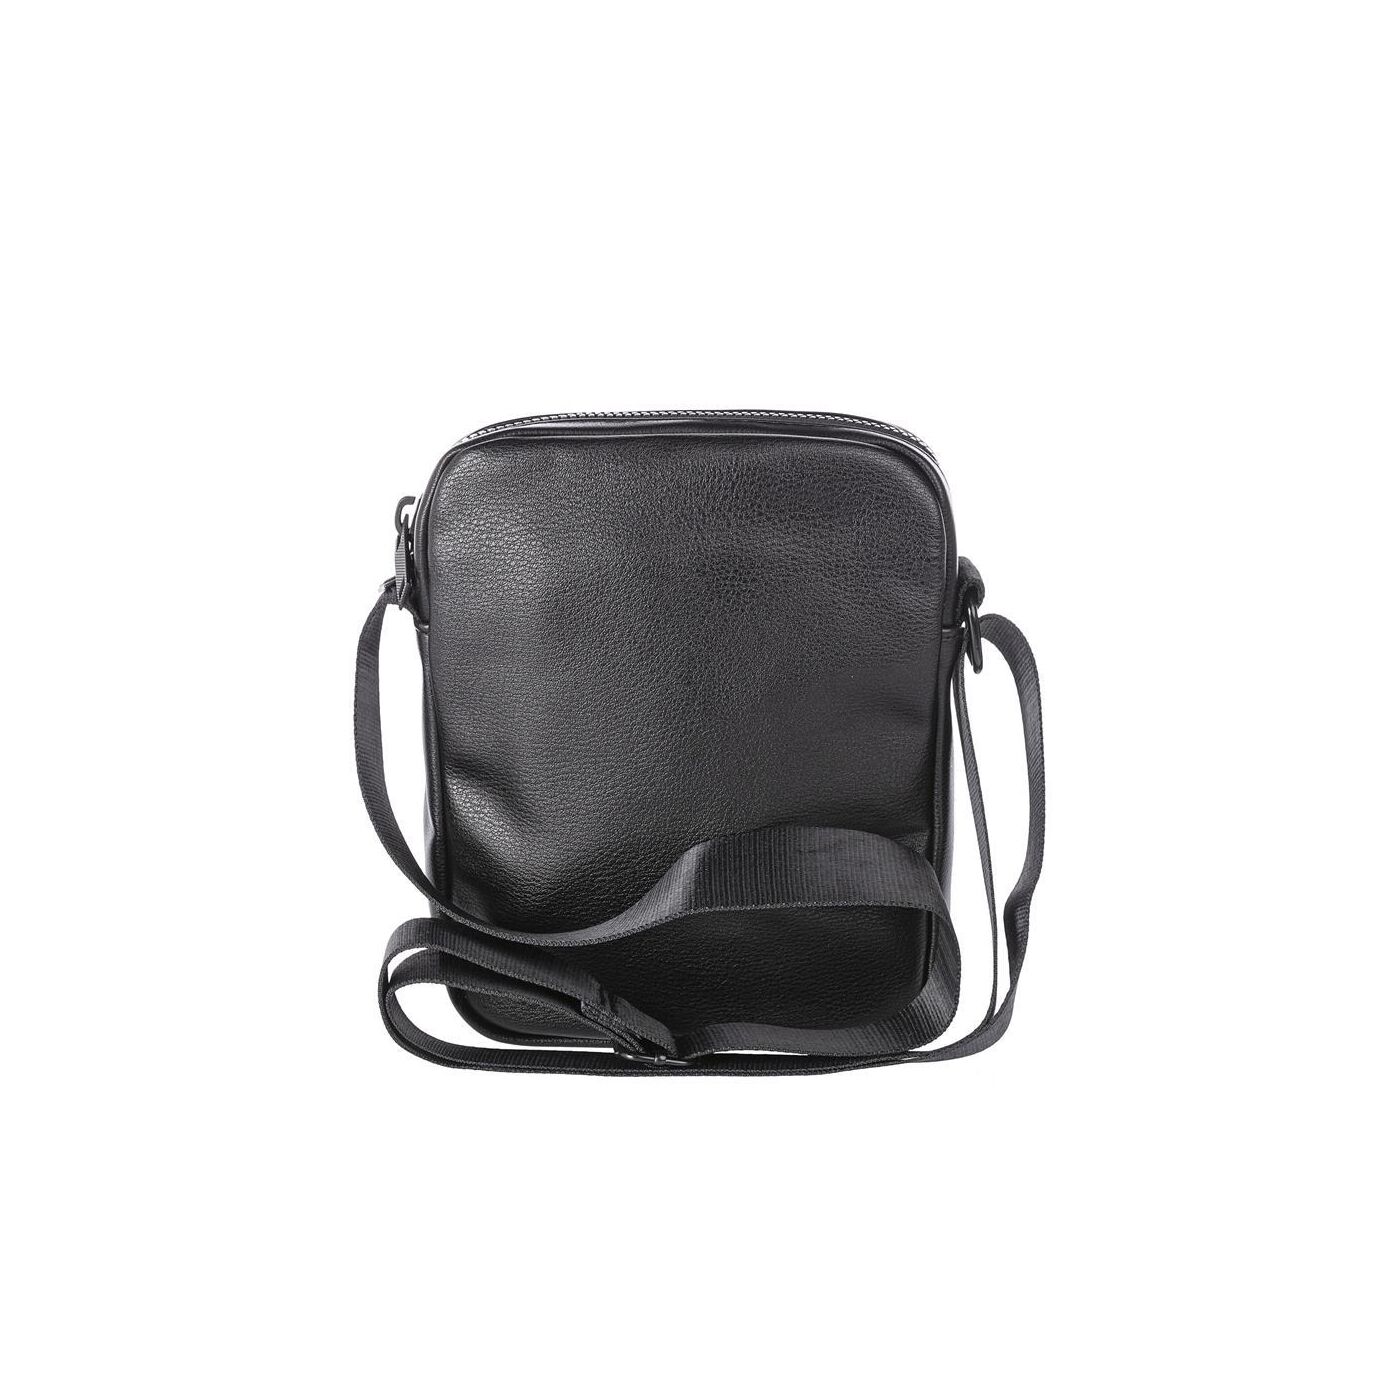 Black Black Red Bridge M7200 Shoulder Bag with Side Bag Imitation Leather - M7200 